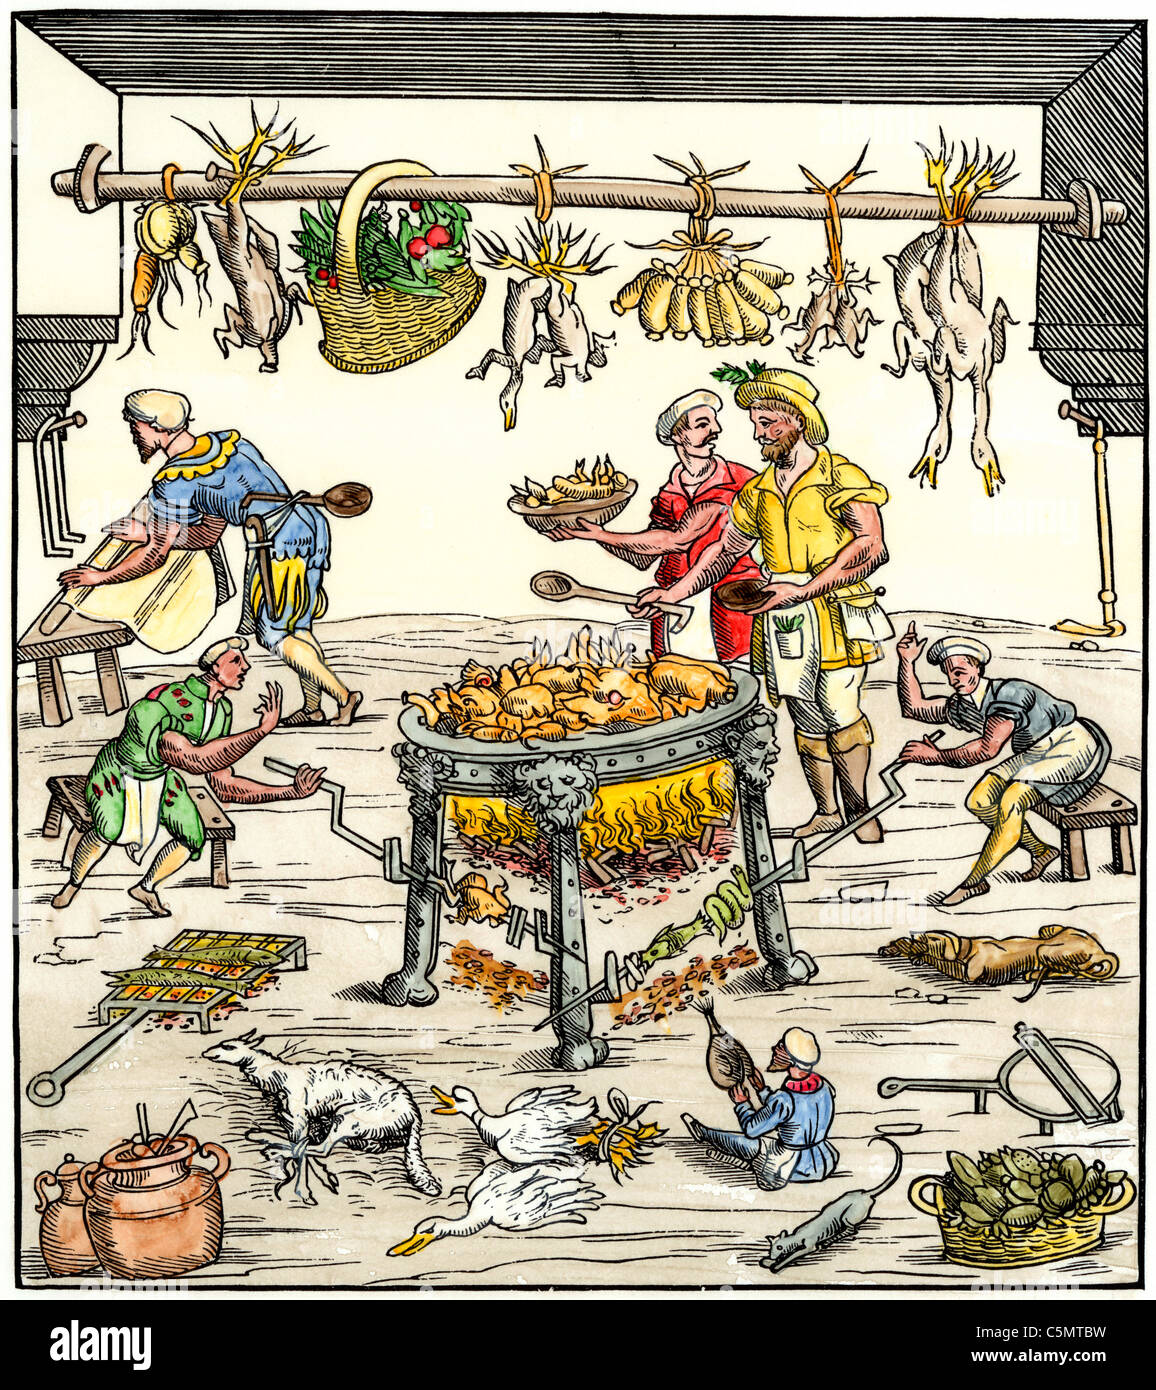 Les cuisiniers préparer la nourriture dans une cuisine italienne 1500s. À la main, gravure sur bois Banque D'Images